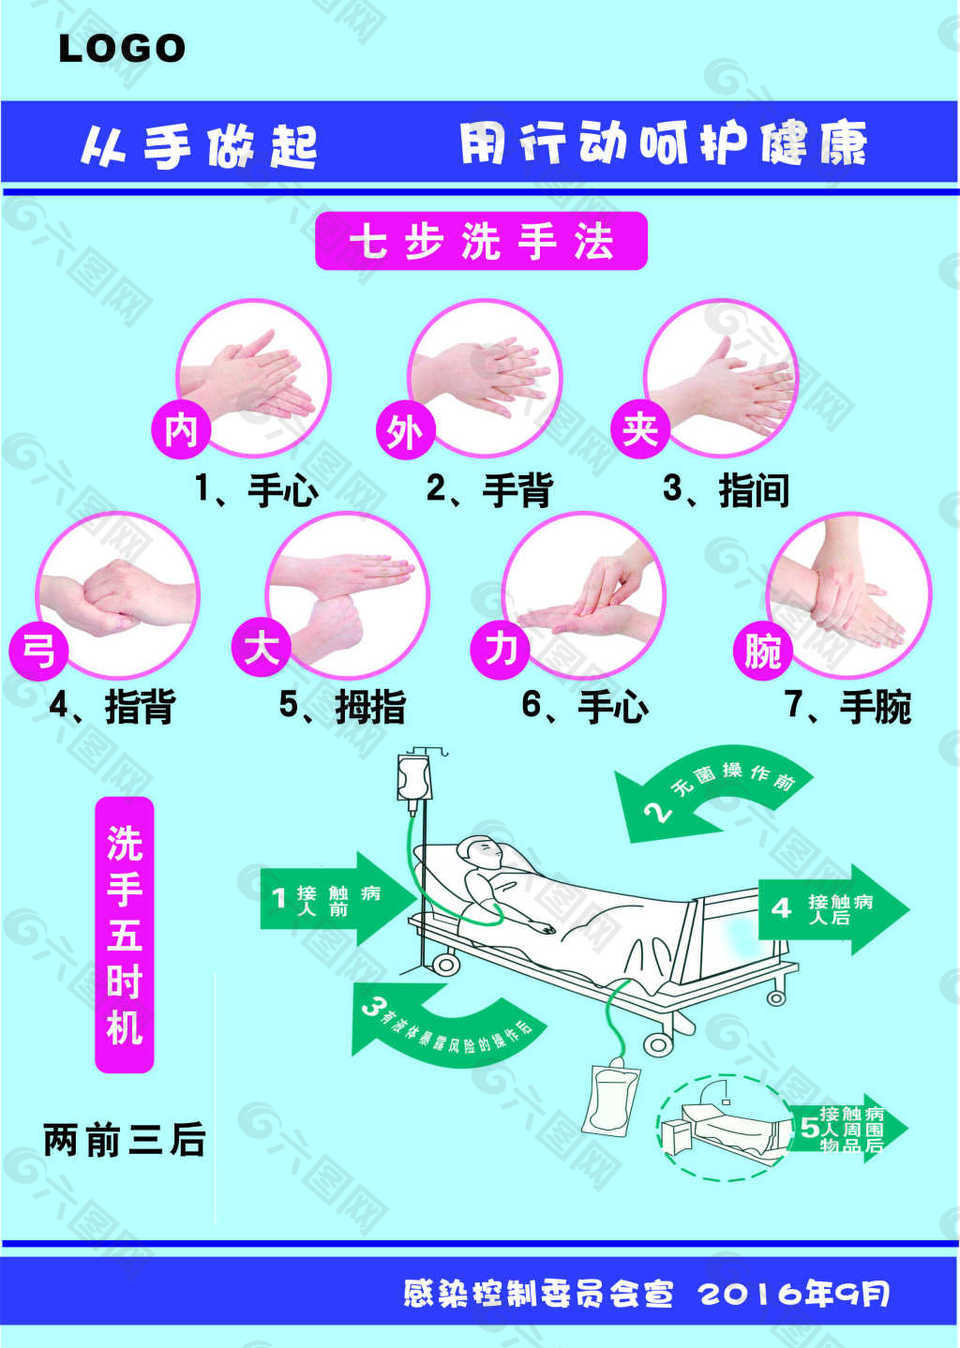 七步洗手法洗手五时机平面广告素材免费下载(图片编号:8016674)